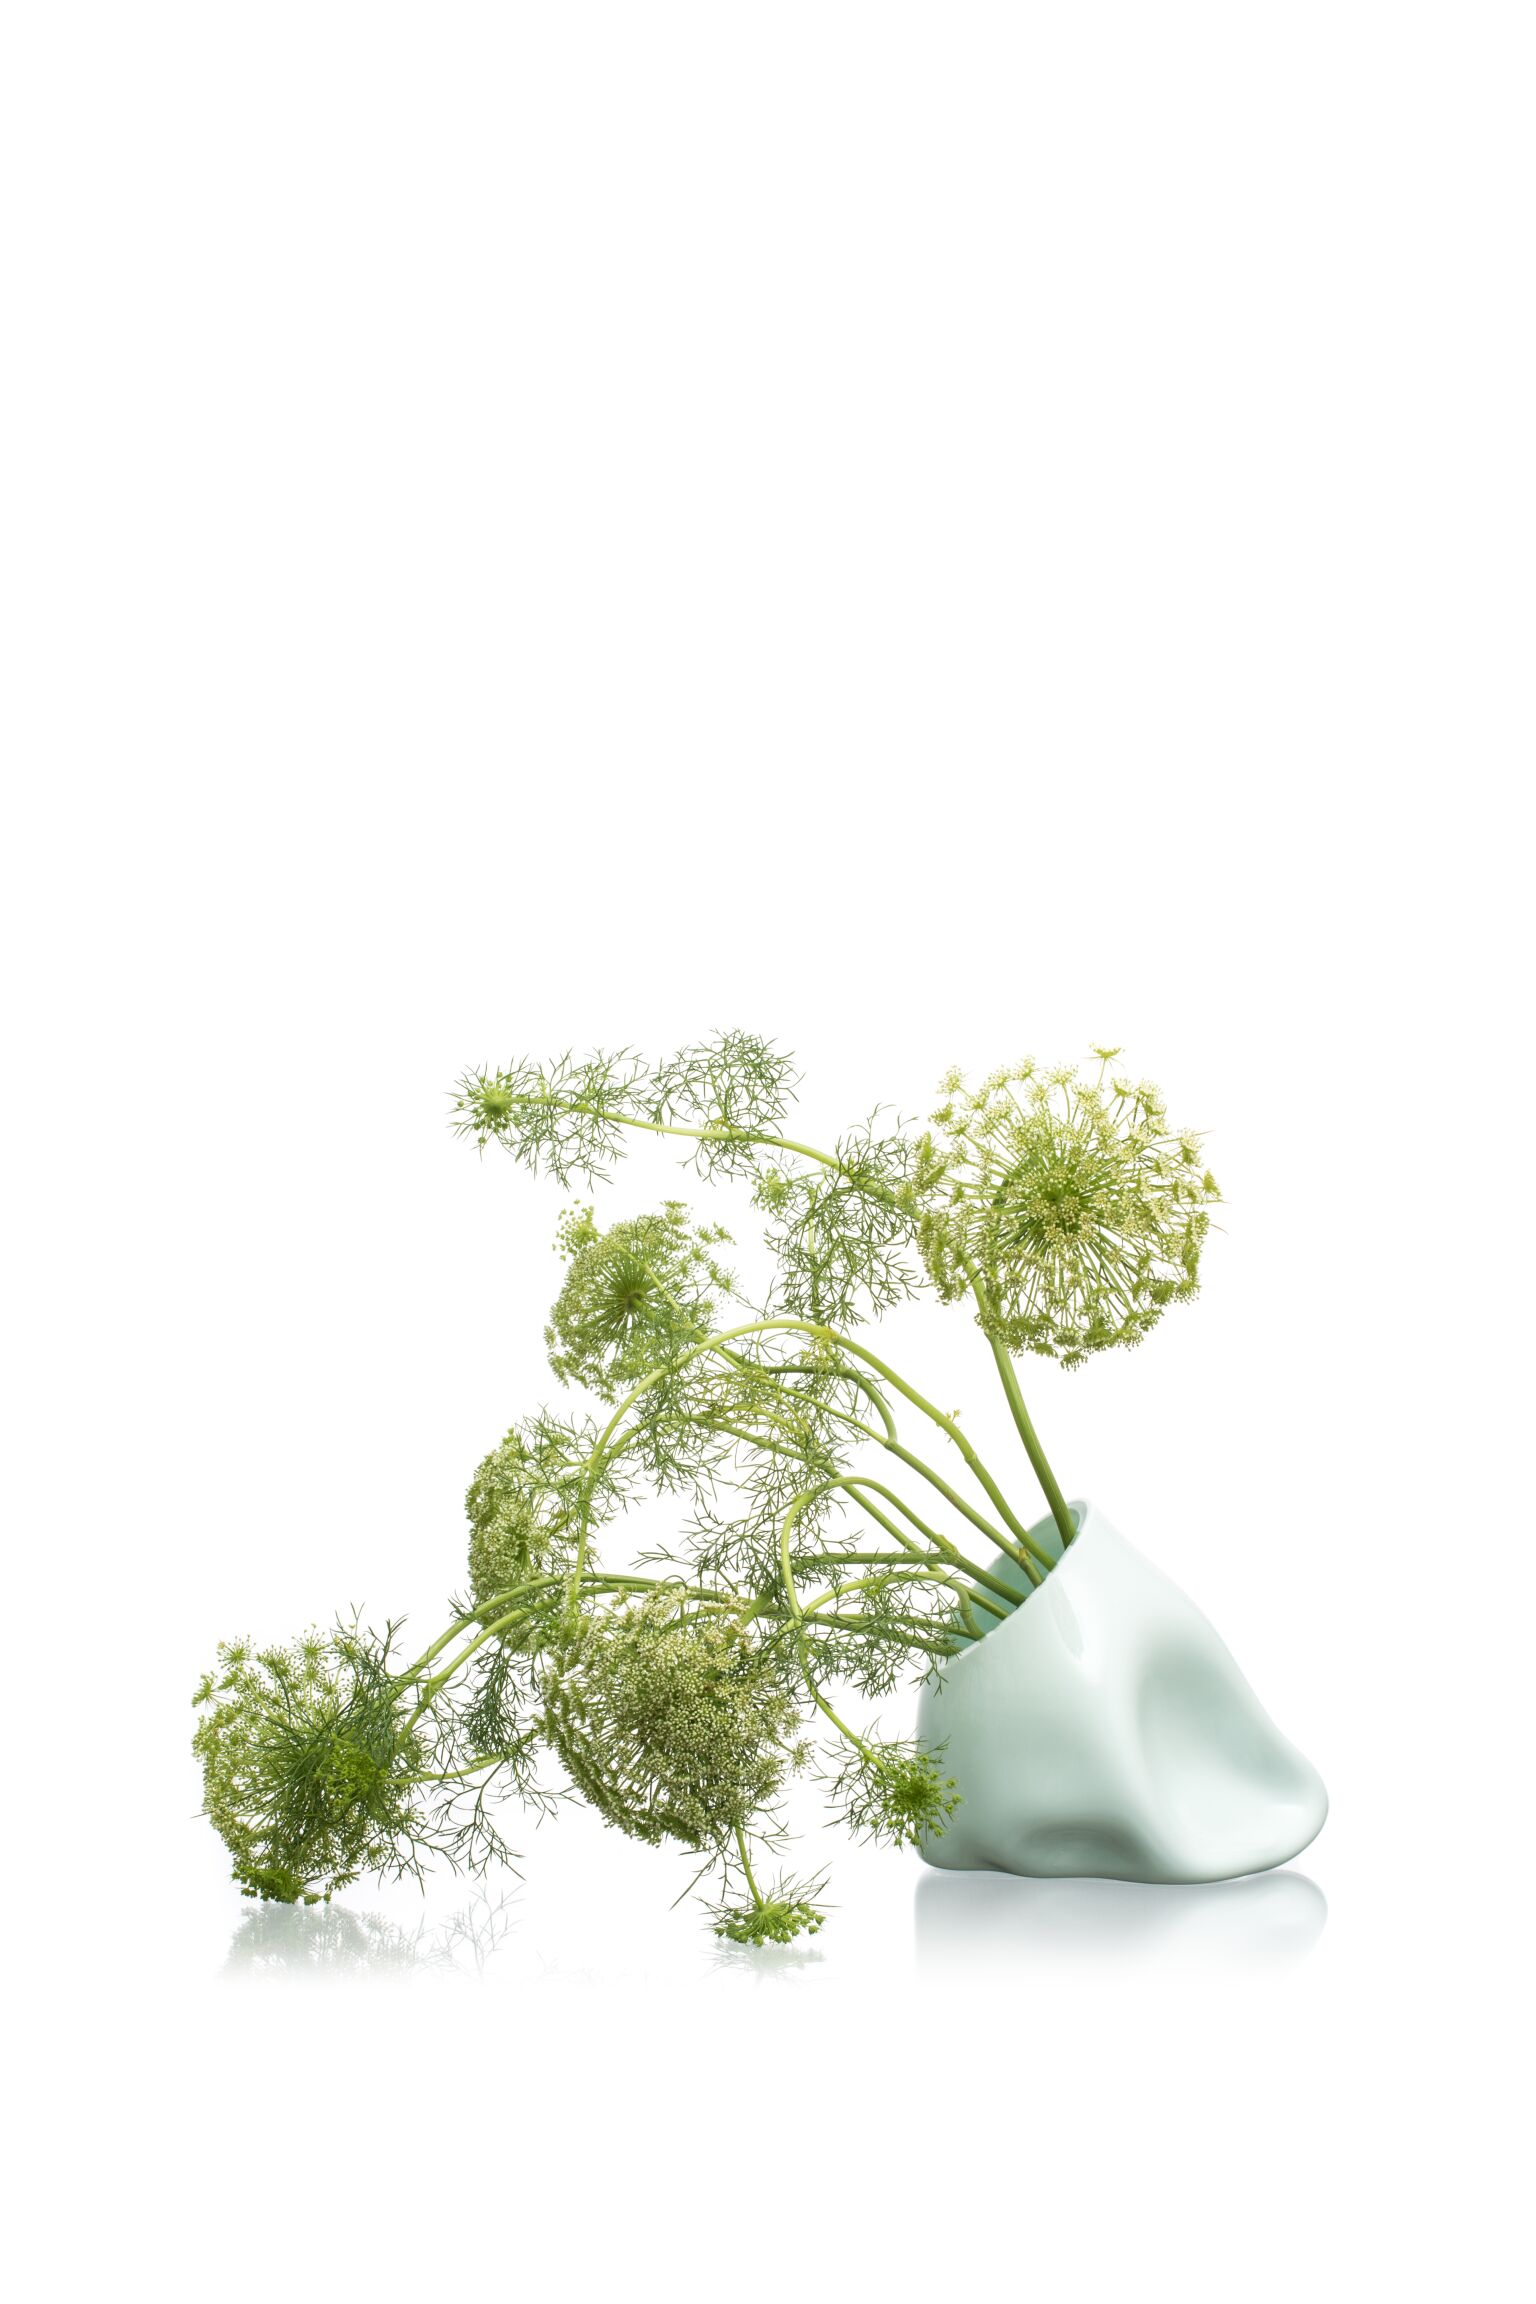 Biela sklenená váza s kvetmi odfotená na bielom pozadí.